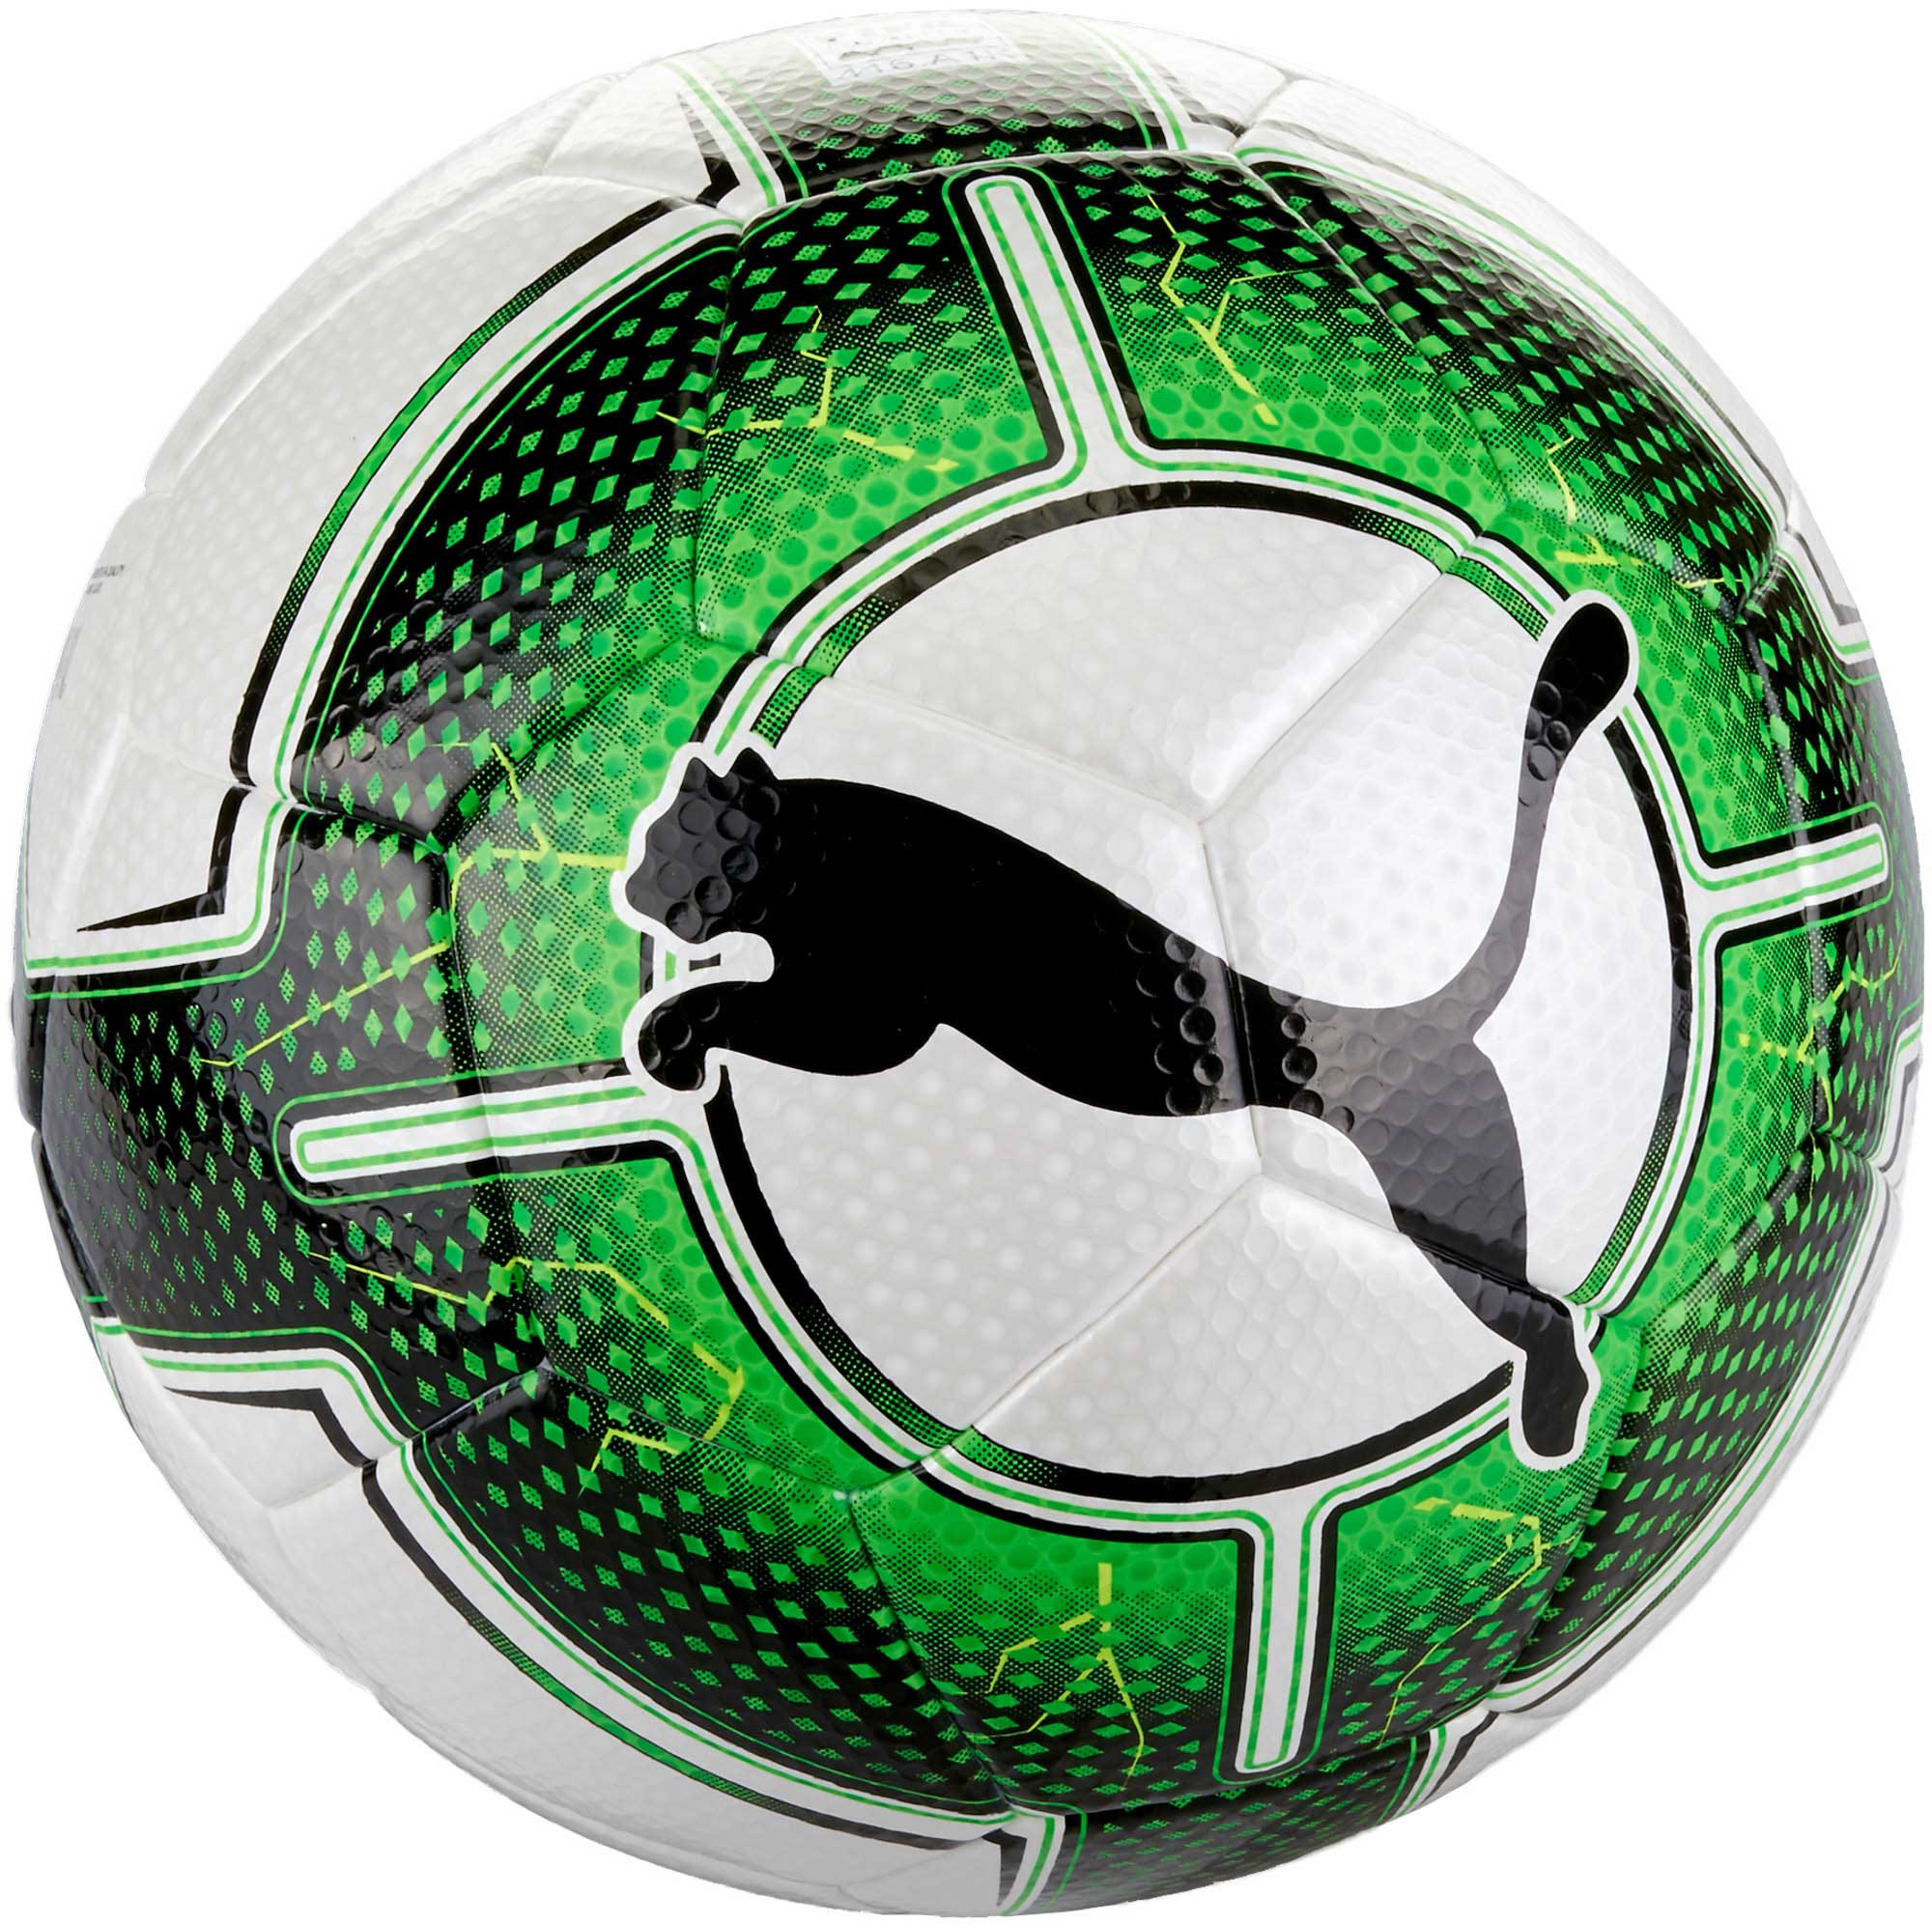 puma soccer balls